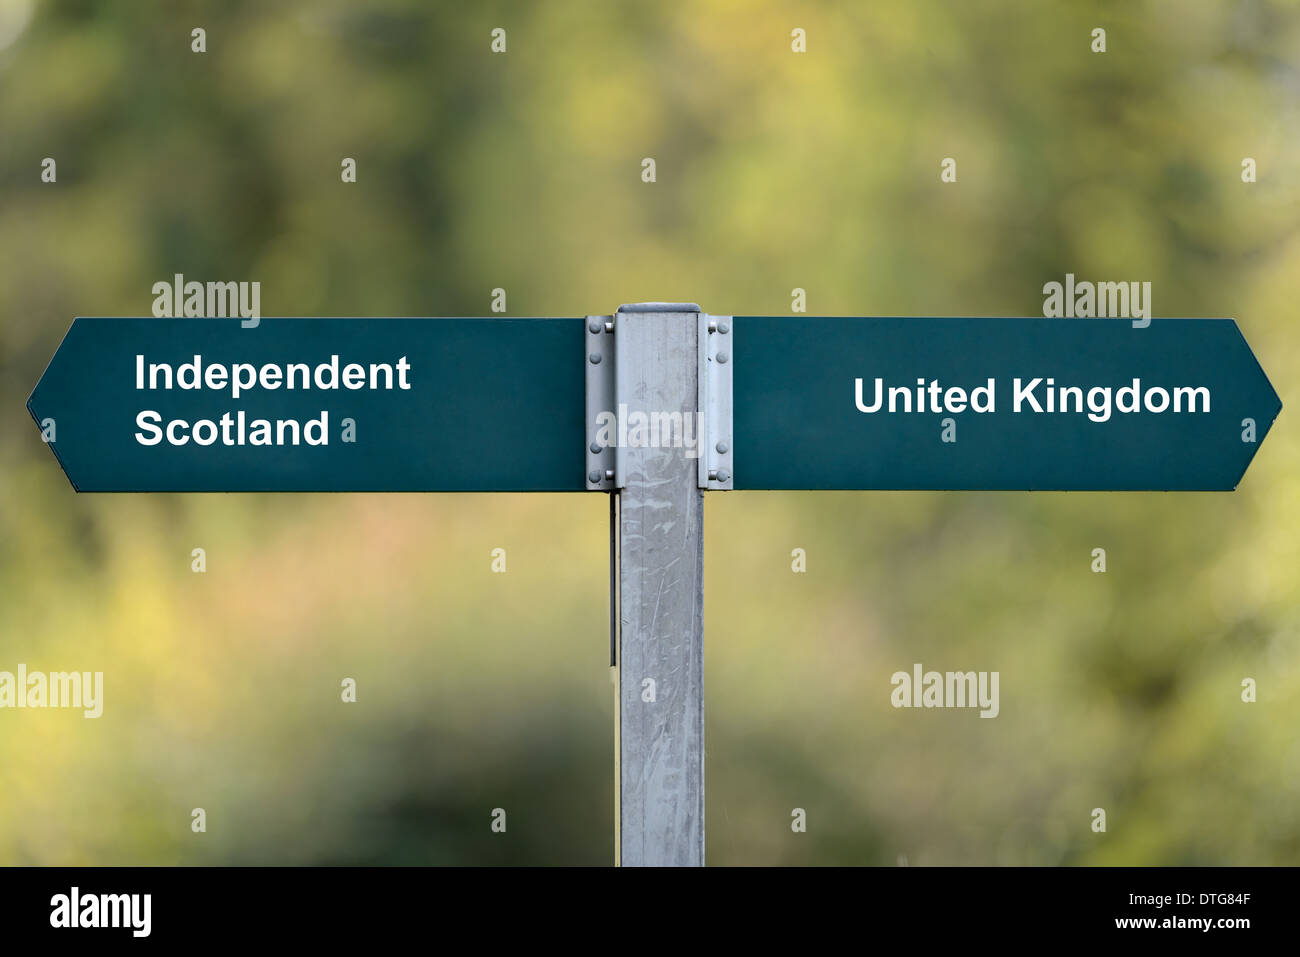 Panneau indiquant l'Ecosse indépendante & Royaume-Uni dans des directions opposées. Arrière-plan flou. Banque D'Images